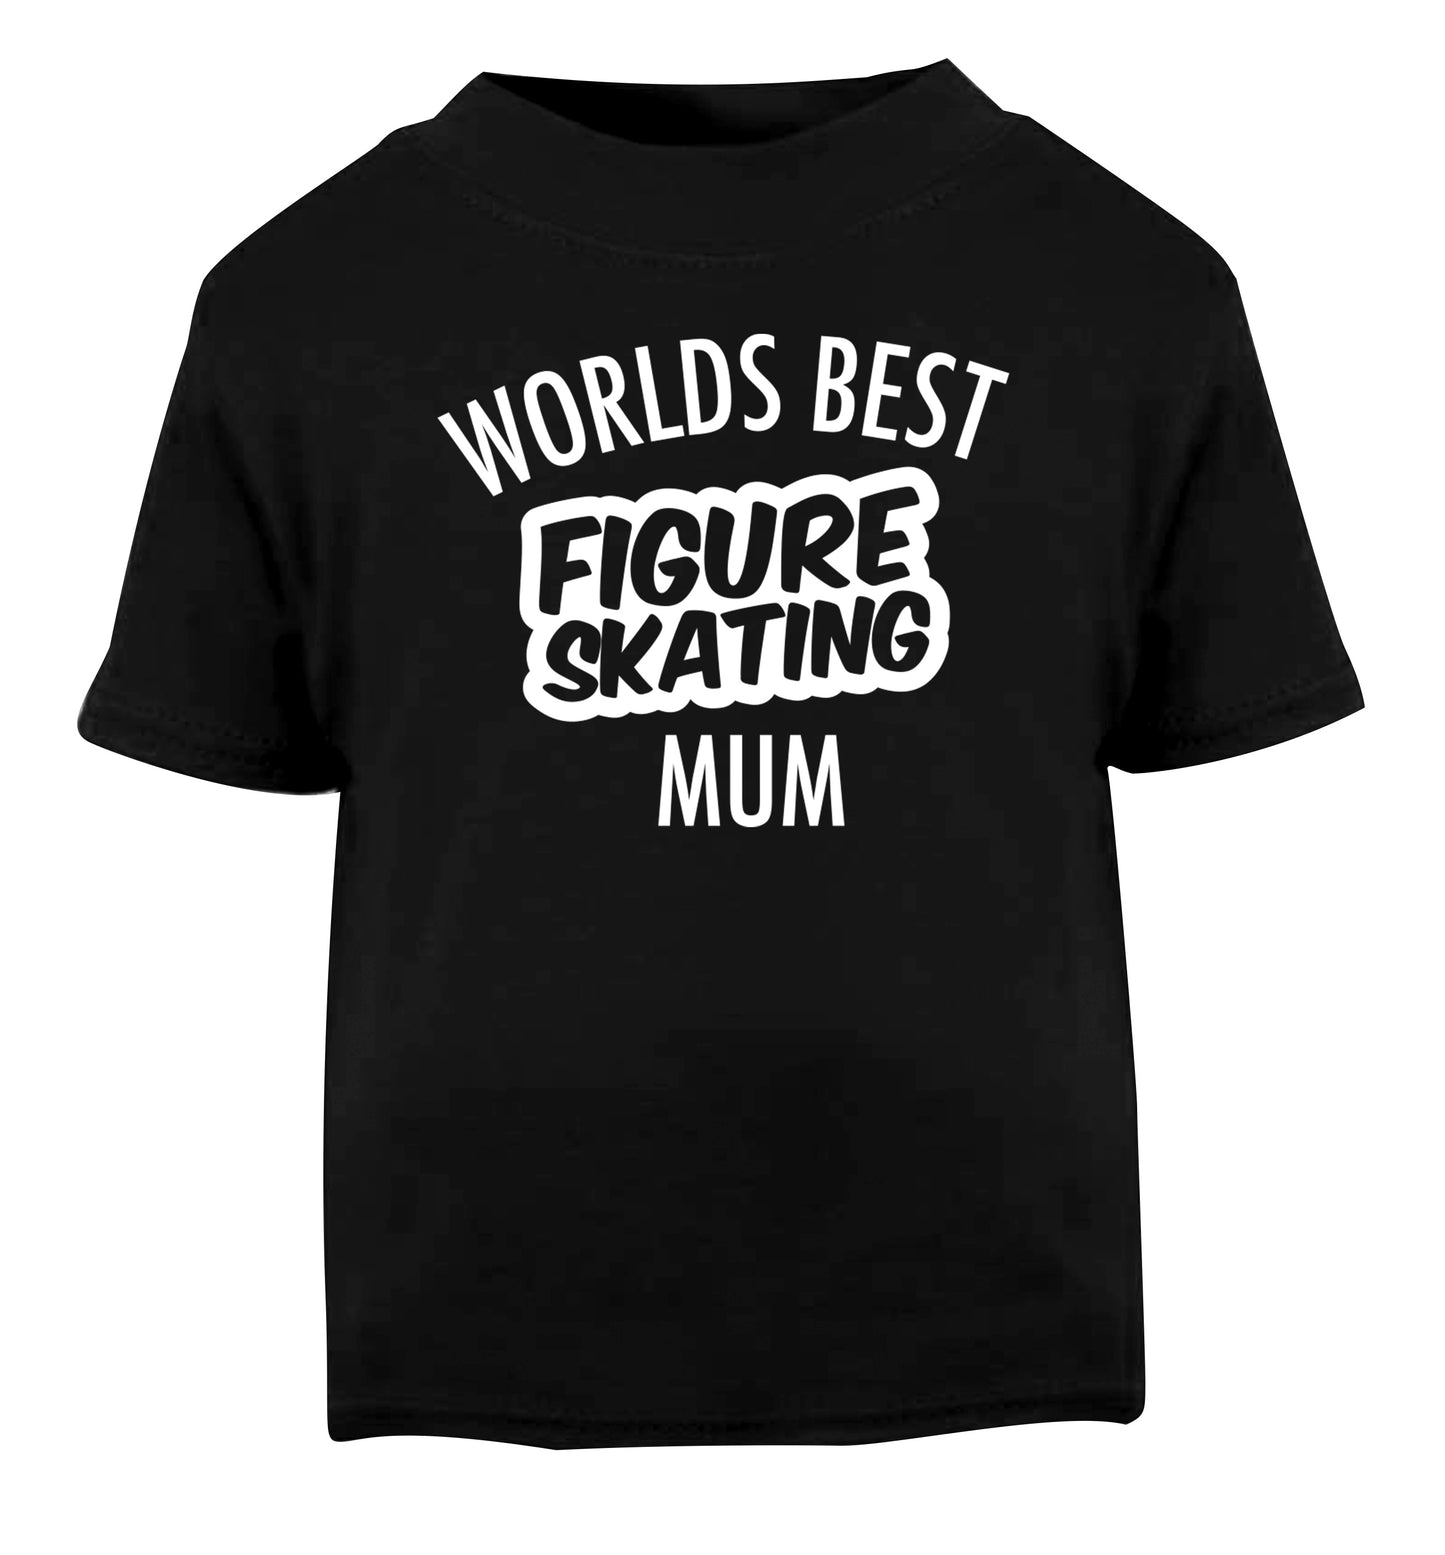 Worlds best figure skating mum Black Baby Toddler Tshirt 2 years